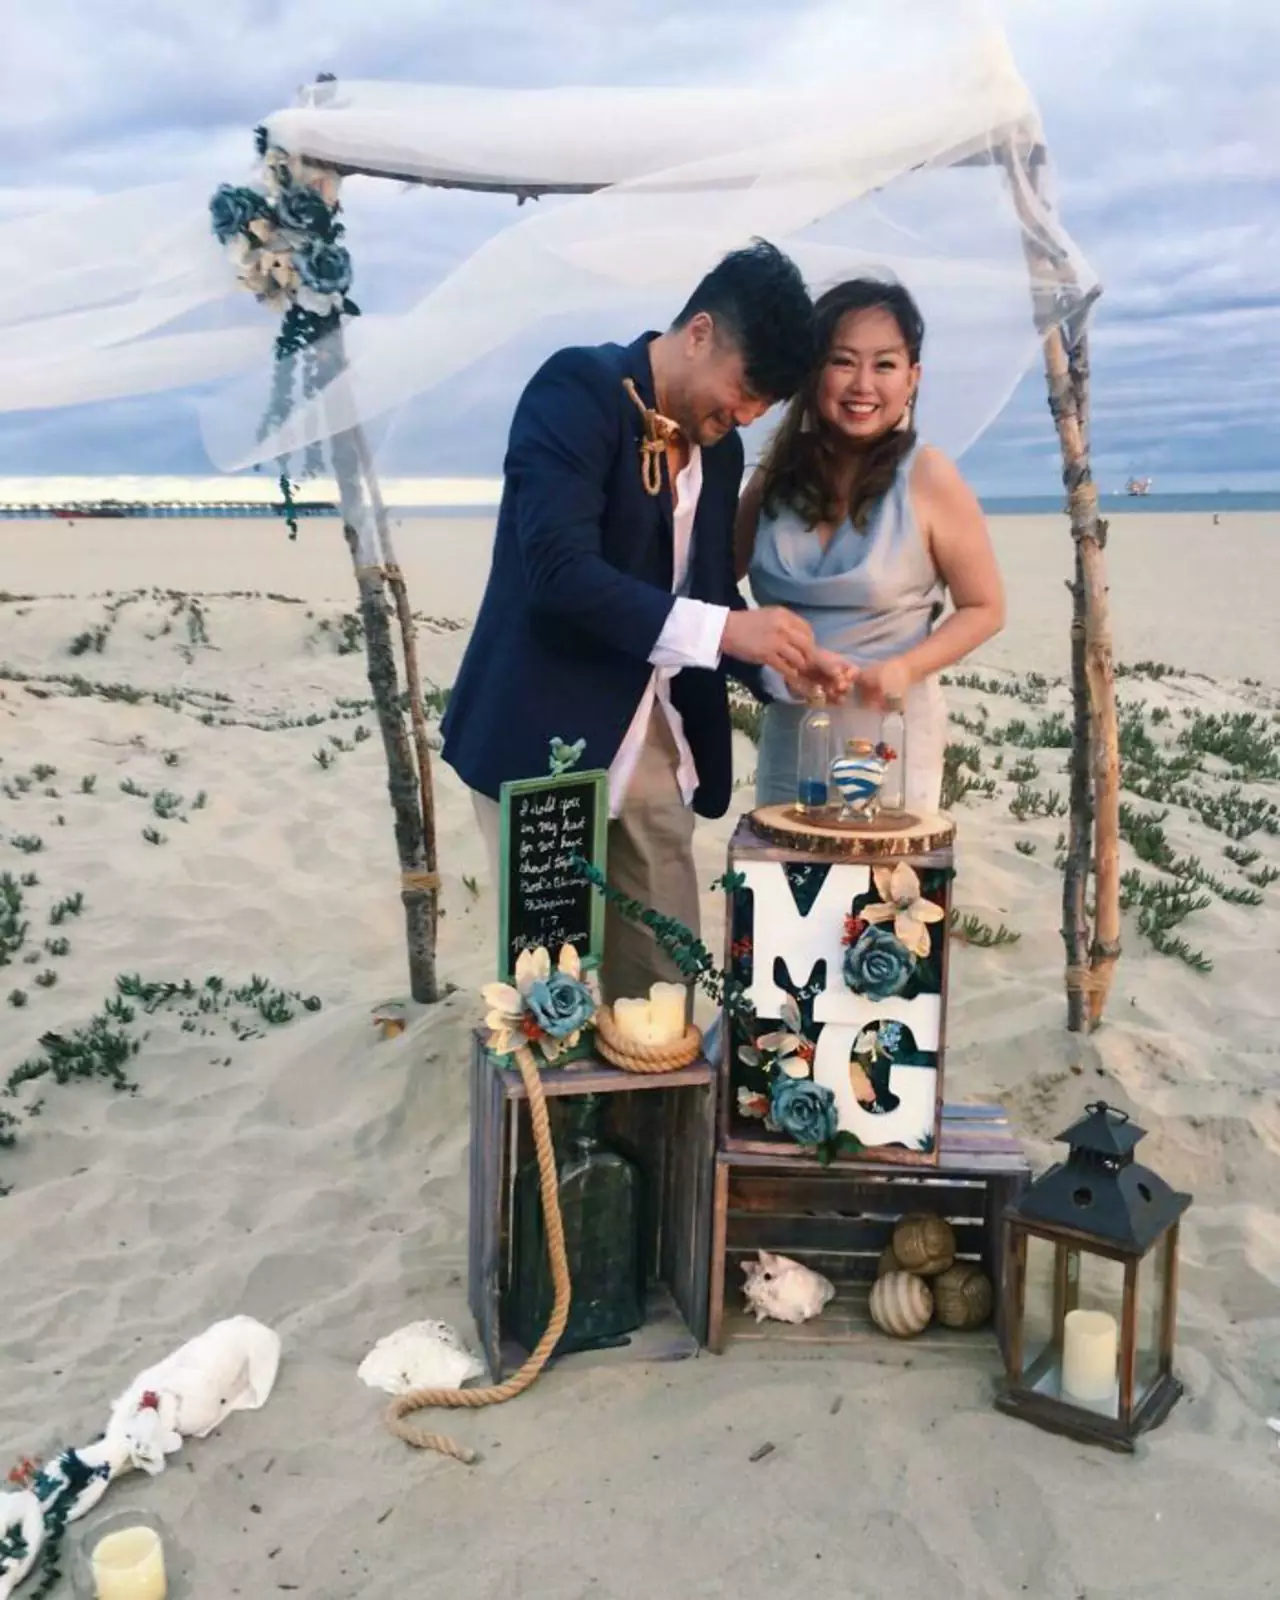 "Моя мама хотела свадьбу своей мечты в калифорнийском деревенском стиле на пляже с бюджетом в 100 долларов".